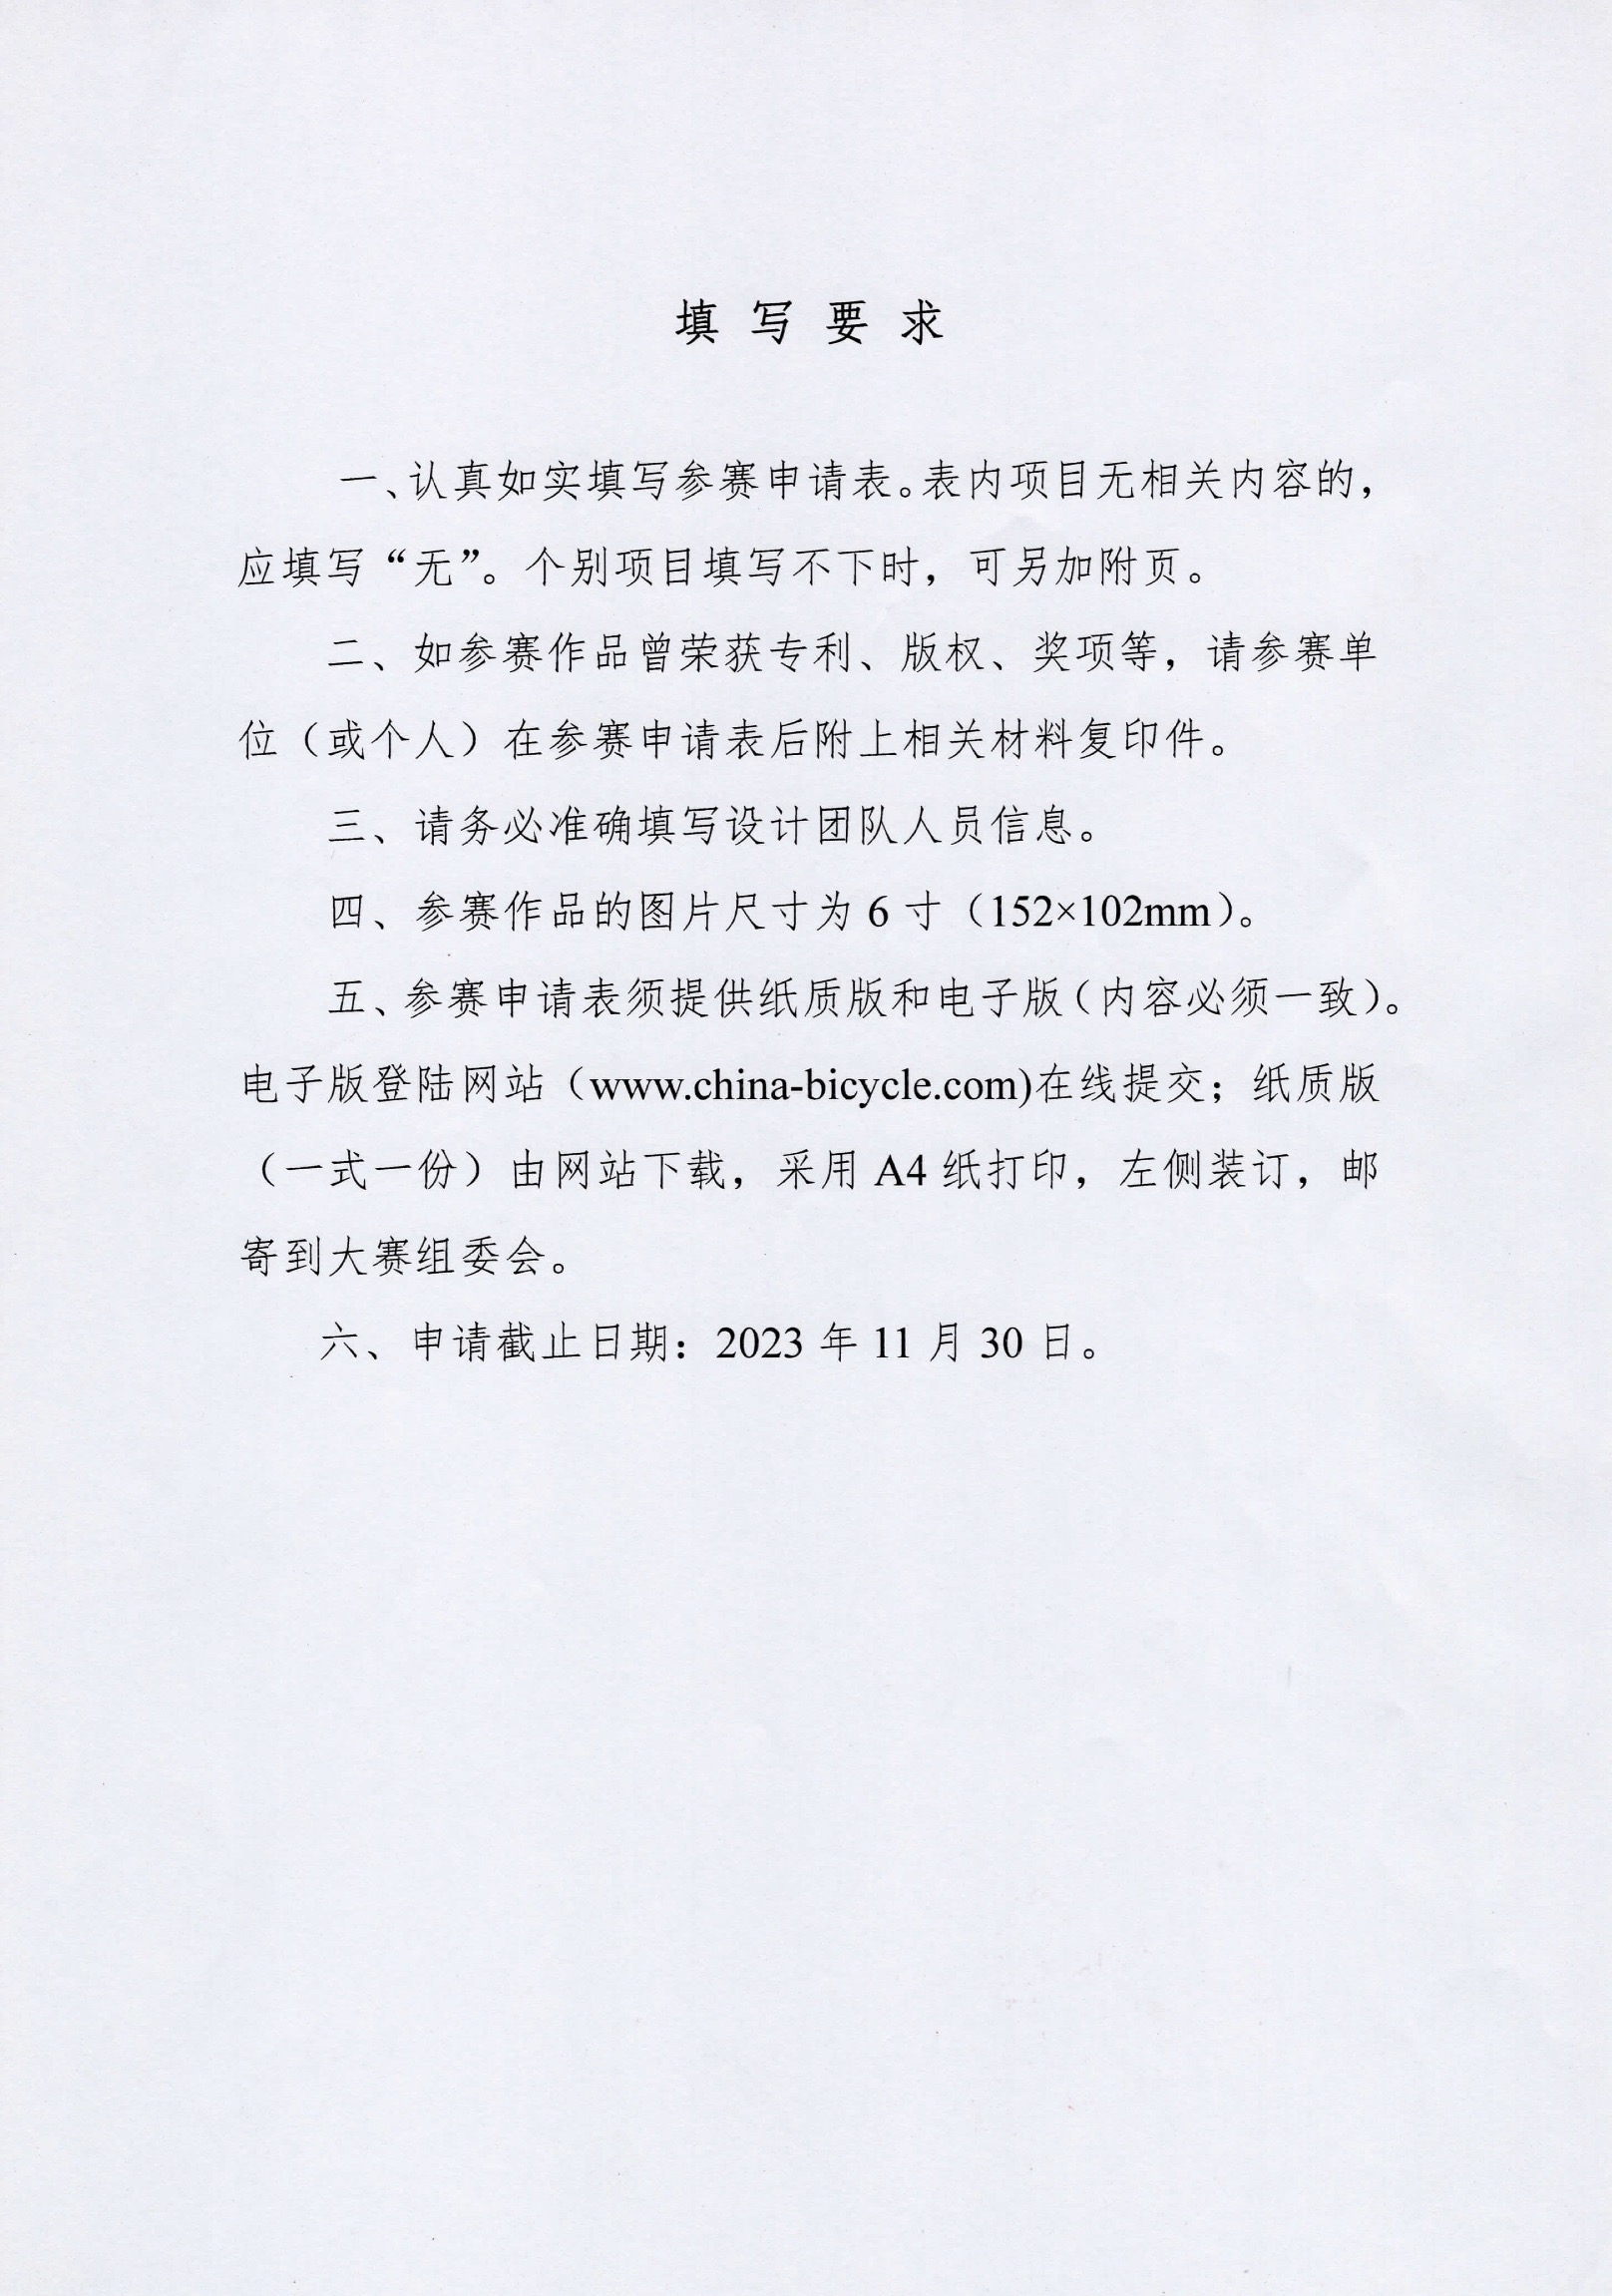 关于举办2023中国自行车电动自行车设计大赛的通知(3) 7.jpeg